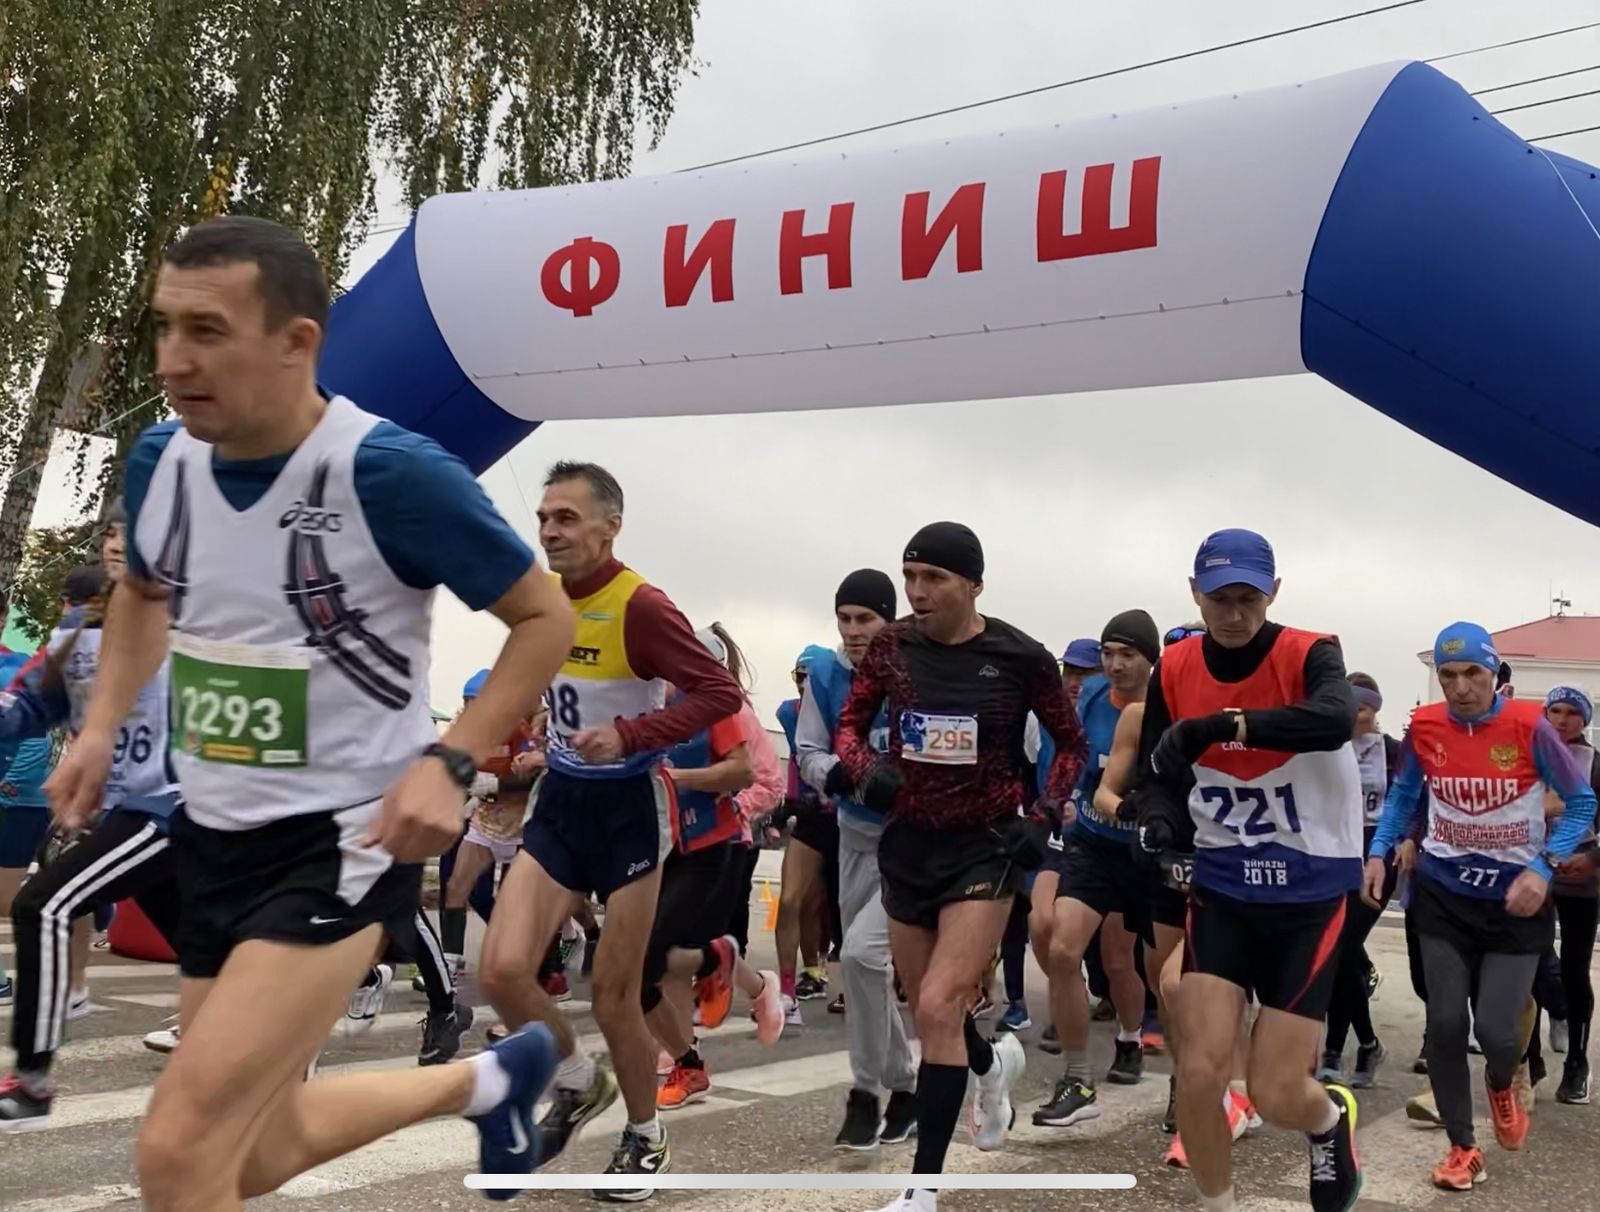 31-й легкоатлетический полумарафон на приз газеты «Кызыл Тан» стартовал в г. Дюртюли